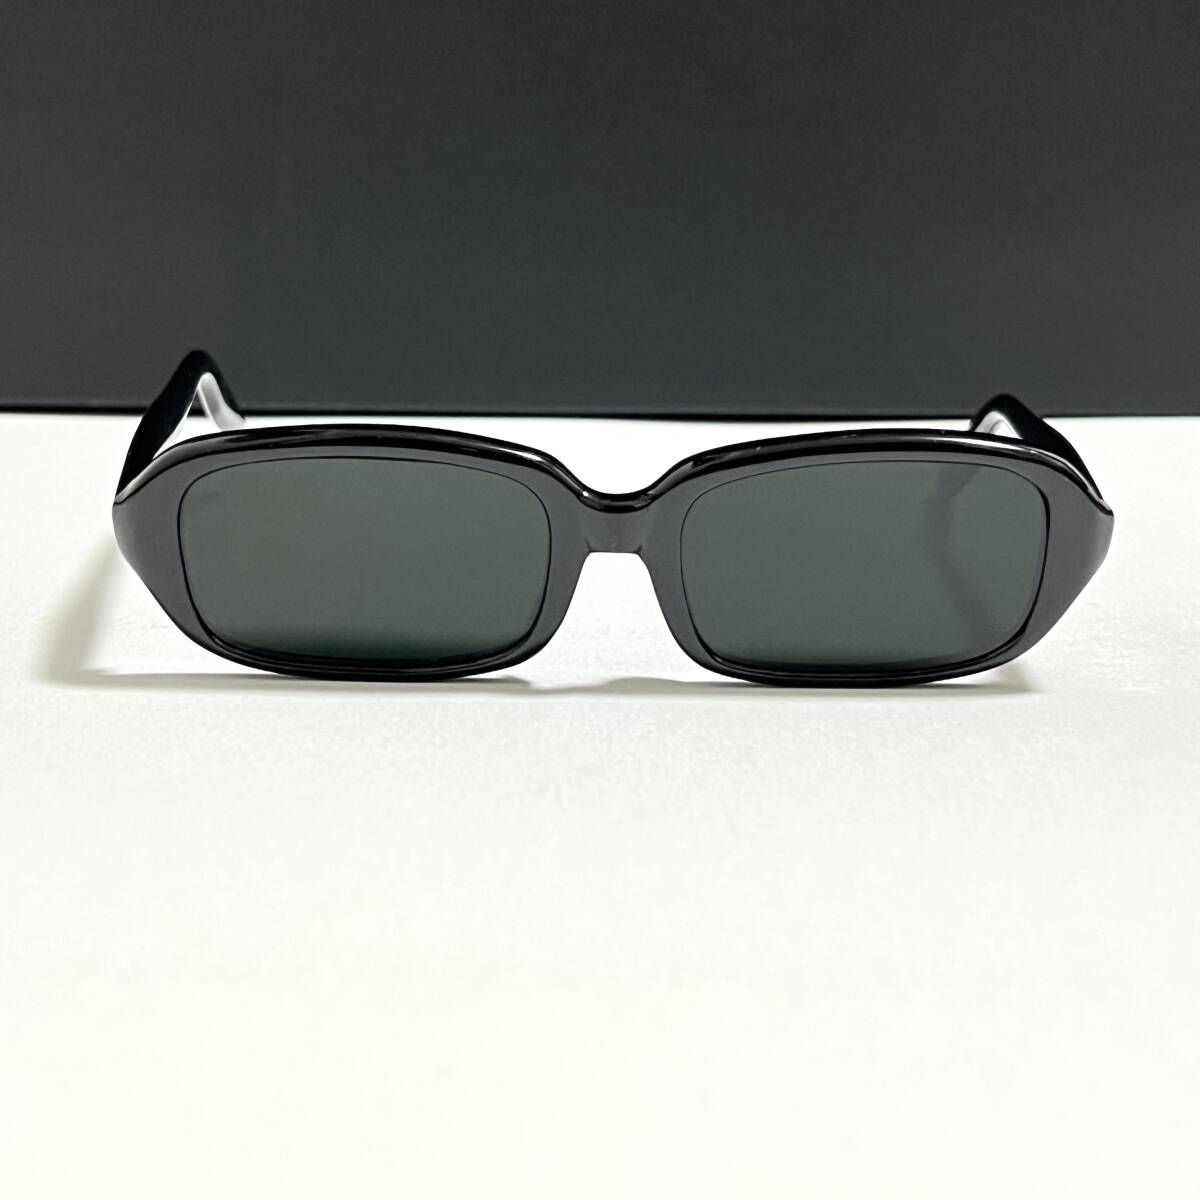 ◆セルロイド製 芯無し ヴィンテージ サングラス フラットレンズ レンズ海外仕様 ブラック 黒 VINTAGE EYEWEAR sunglassesの画像3